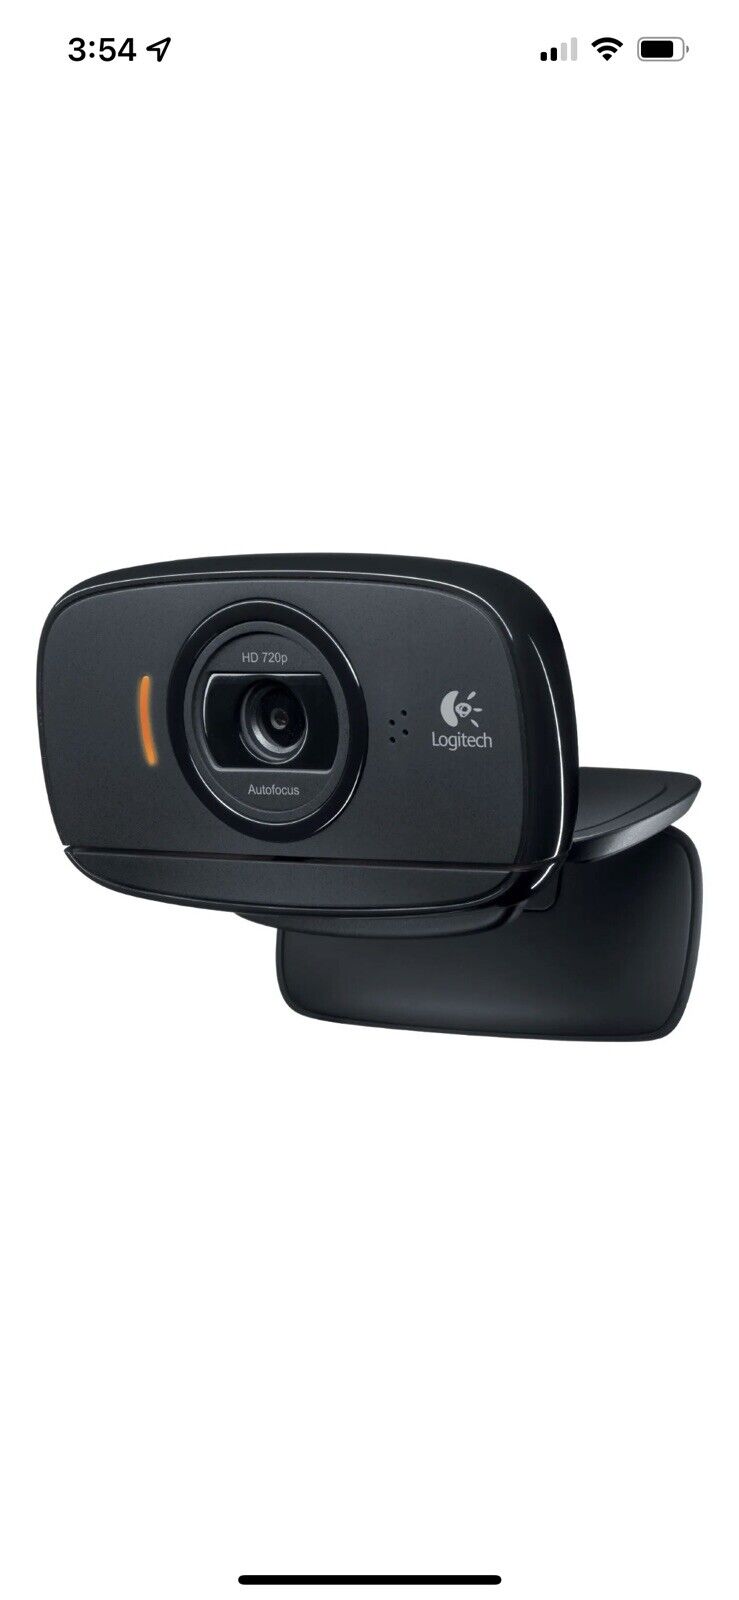 Logitech C525 HD 720P Portable Webcam with Autofocus